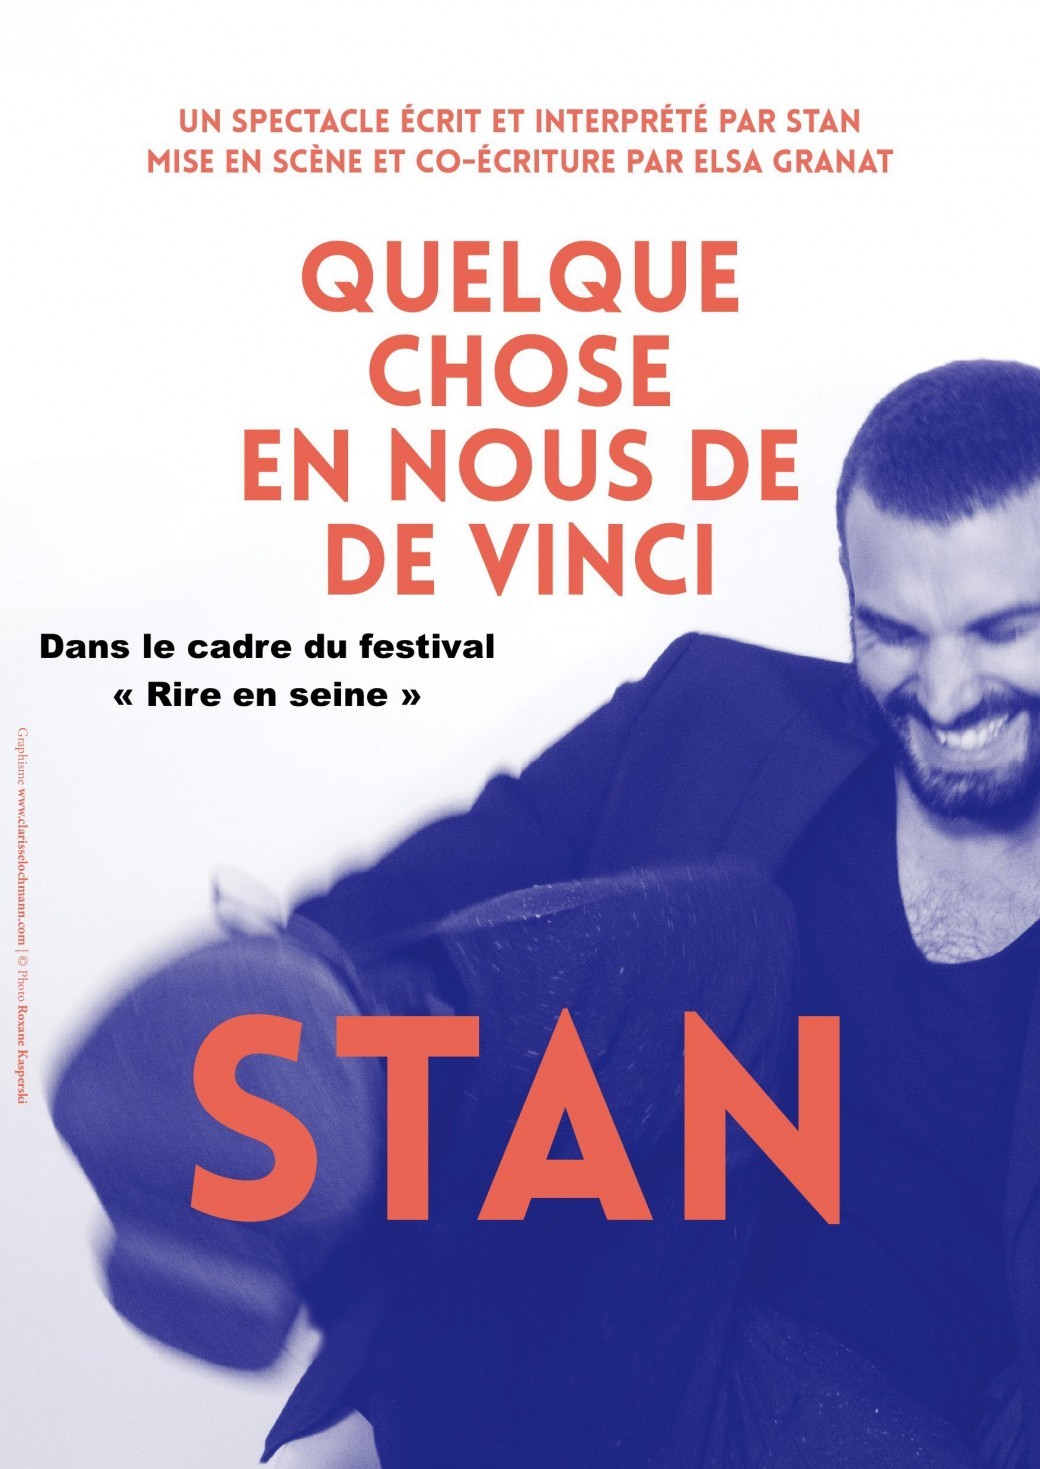 Dans le cadre du Festival RIRE EN SEINE, Stan dans "Quelque chose en nous de De Vinci"